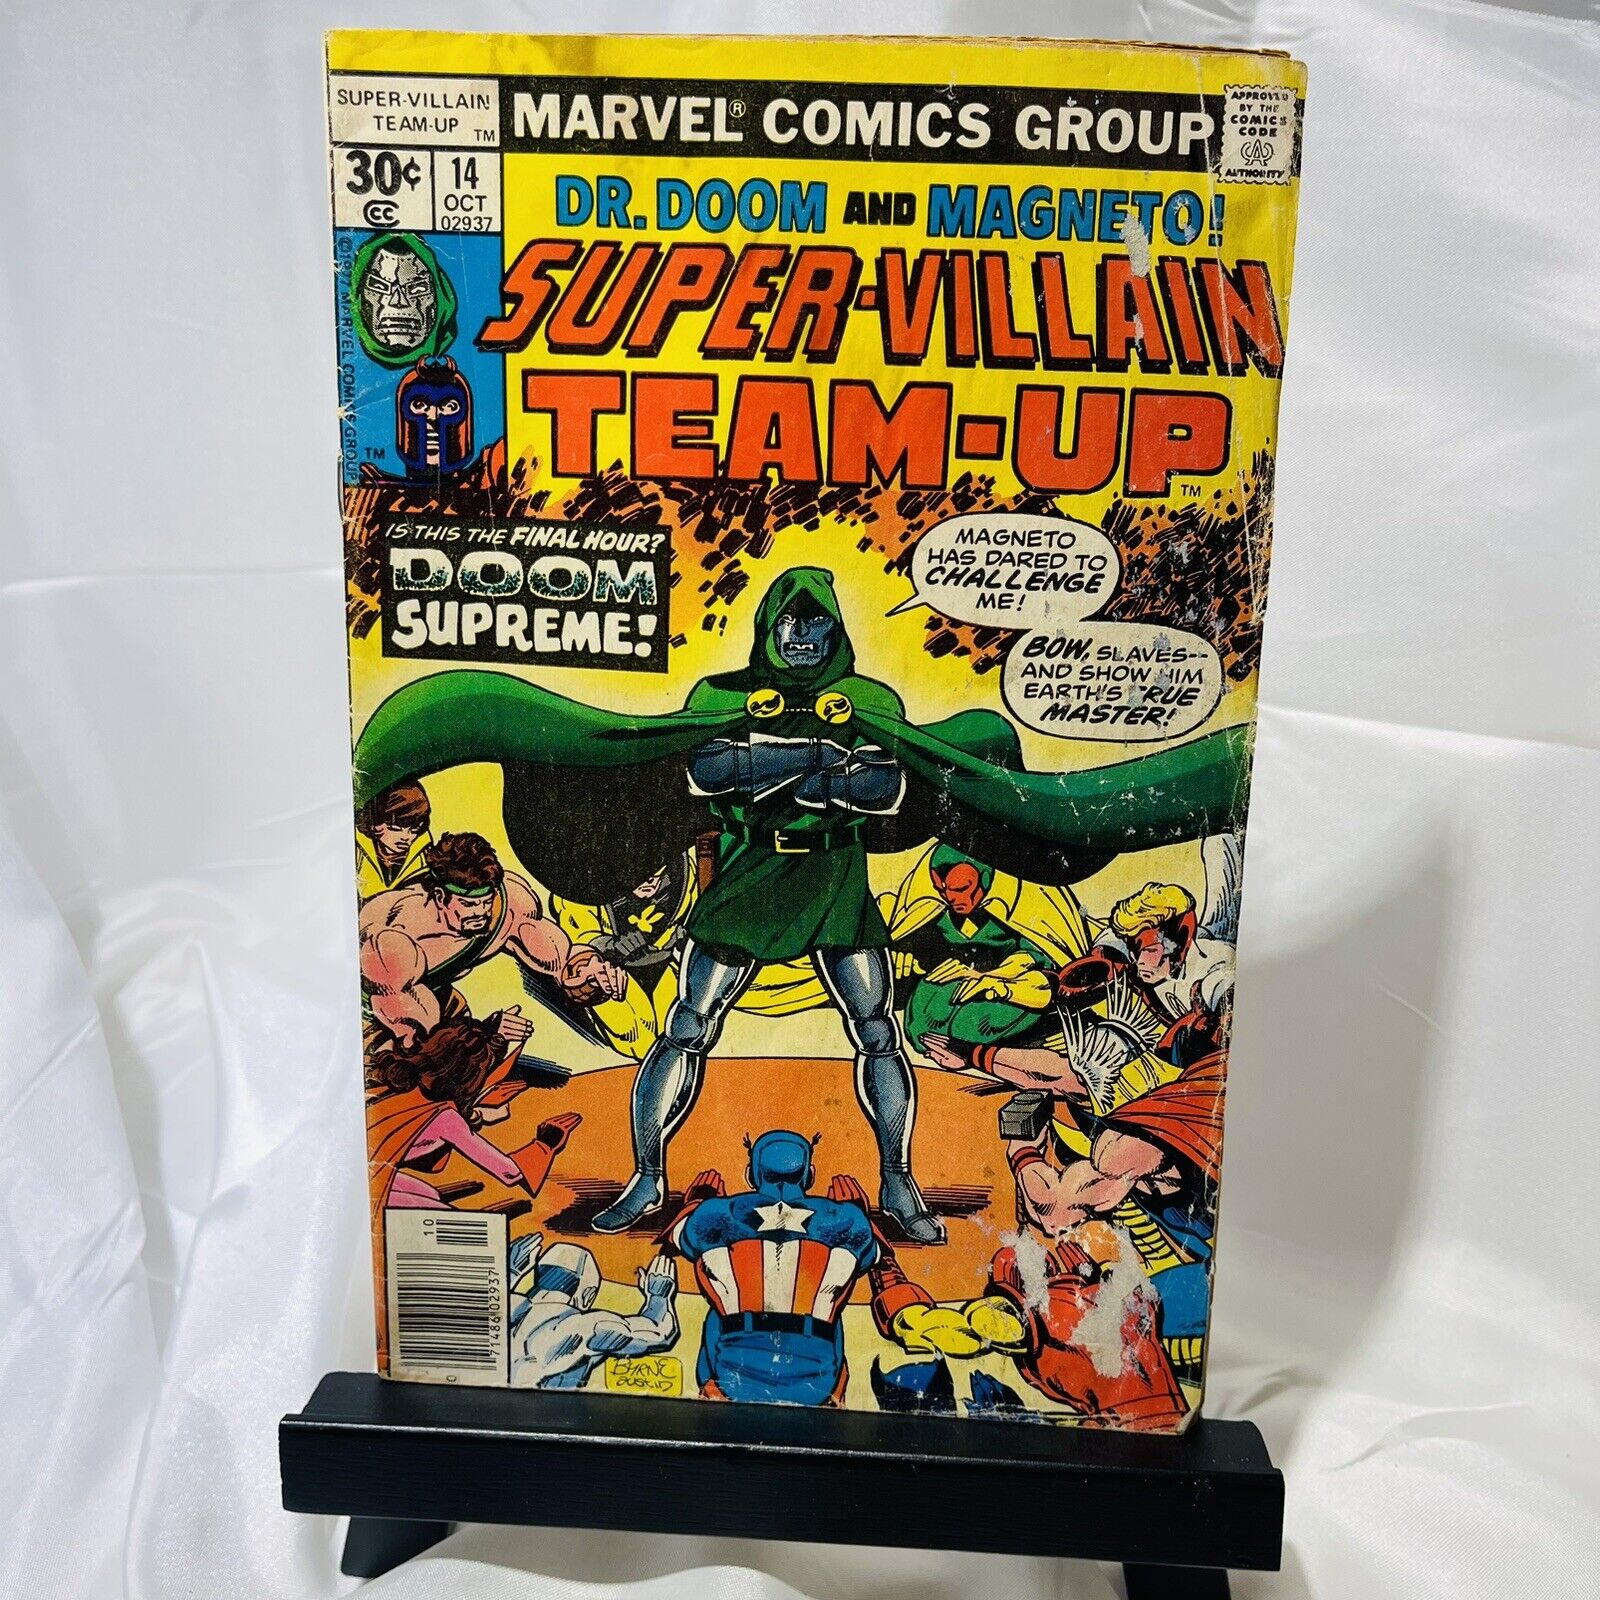 Super-Villain Team-Up #14 Marvel Comics (Oct, 1977) Newsstand